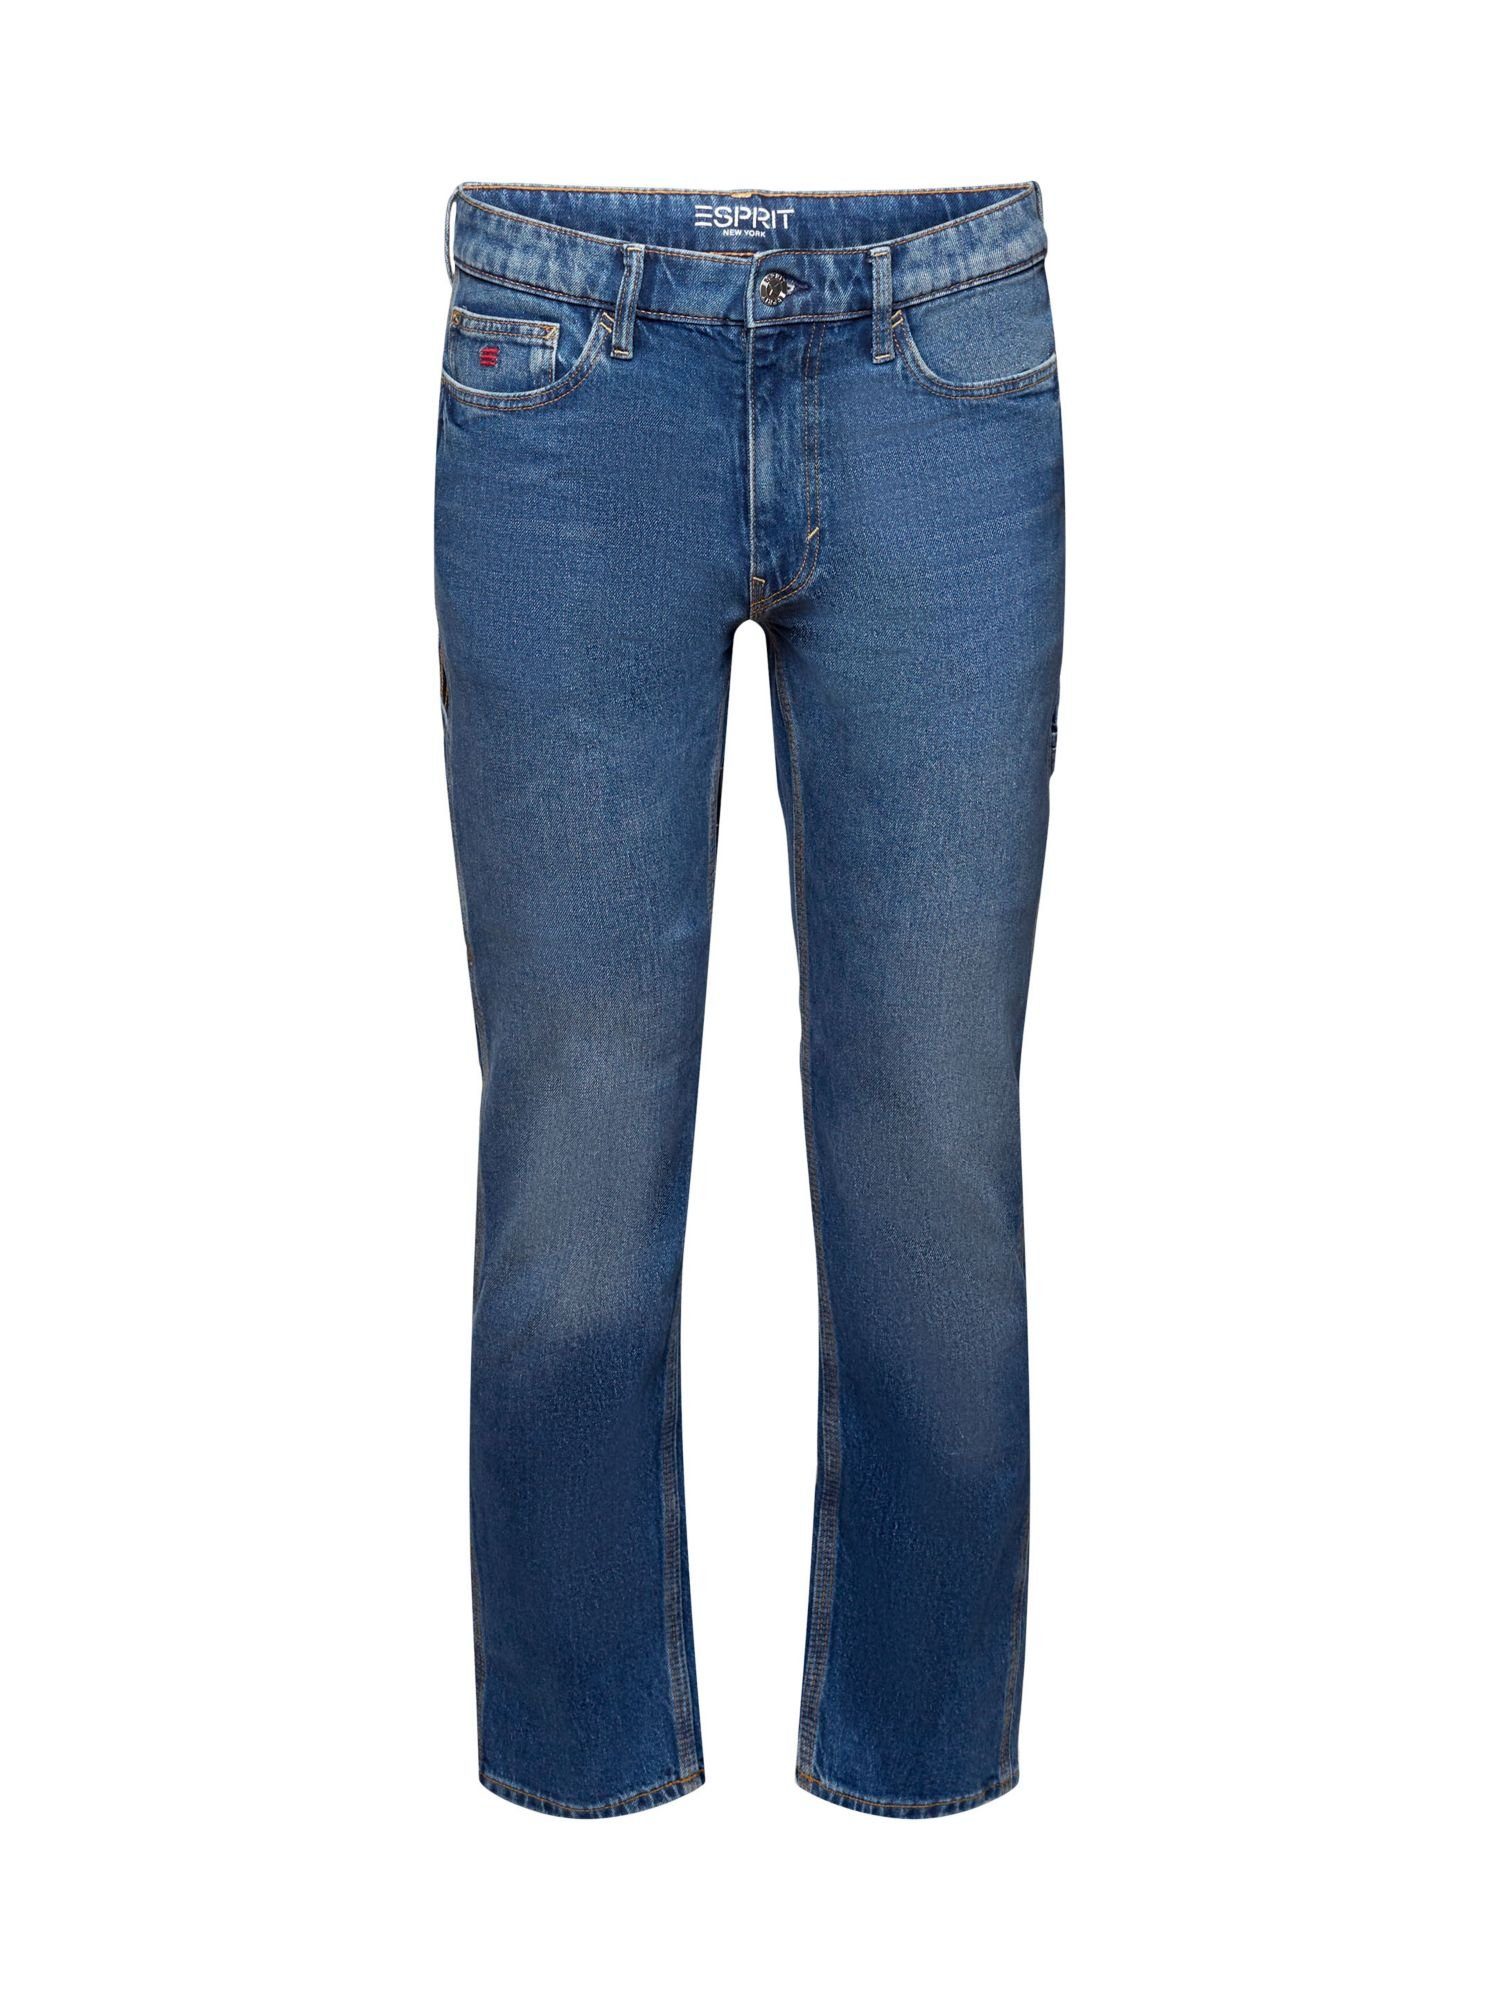 billig abgeben Esprit Straight-Jeans Carpenter-Jeans mit gerader Passform